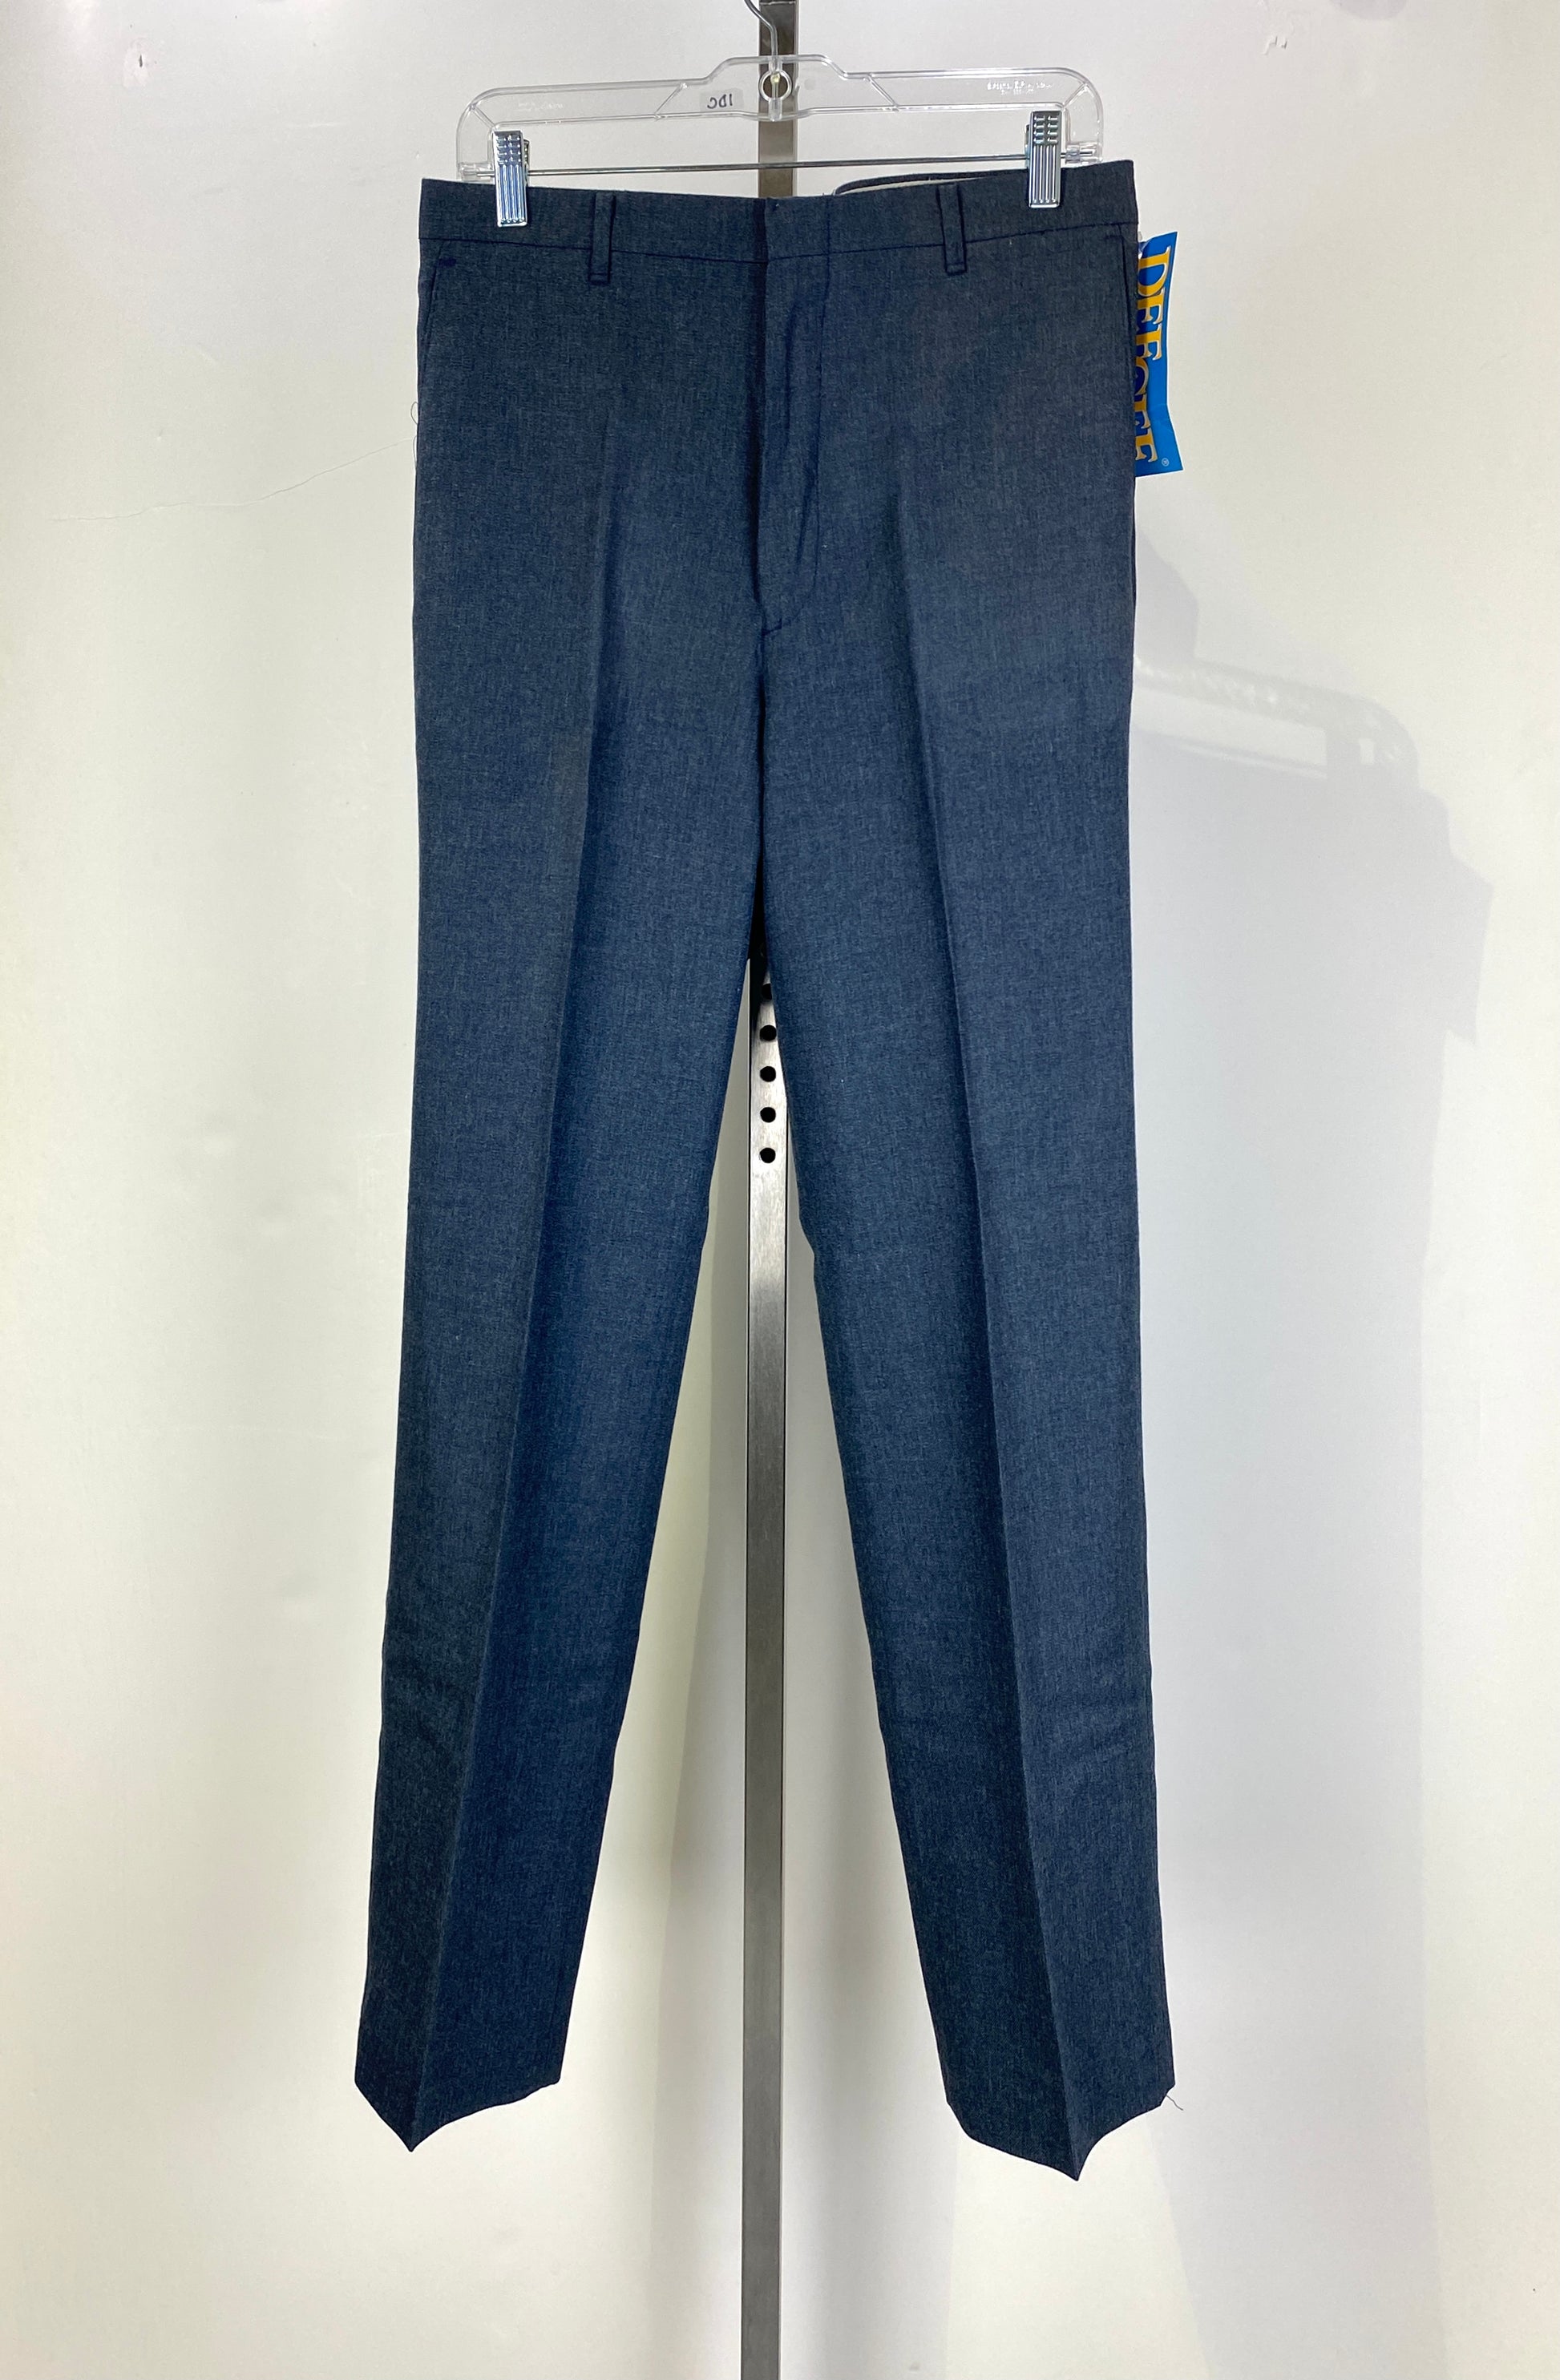 Vintage 1970s Deadstock Dee Cee Slacks, Men's Blue-Grey Trousers, NOS